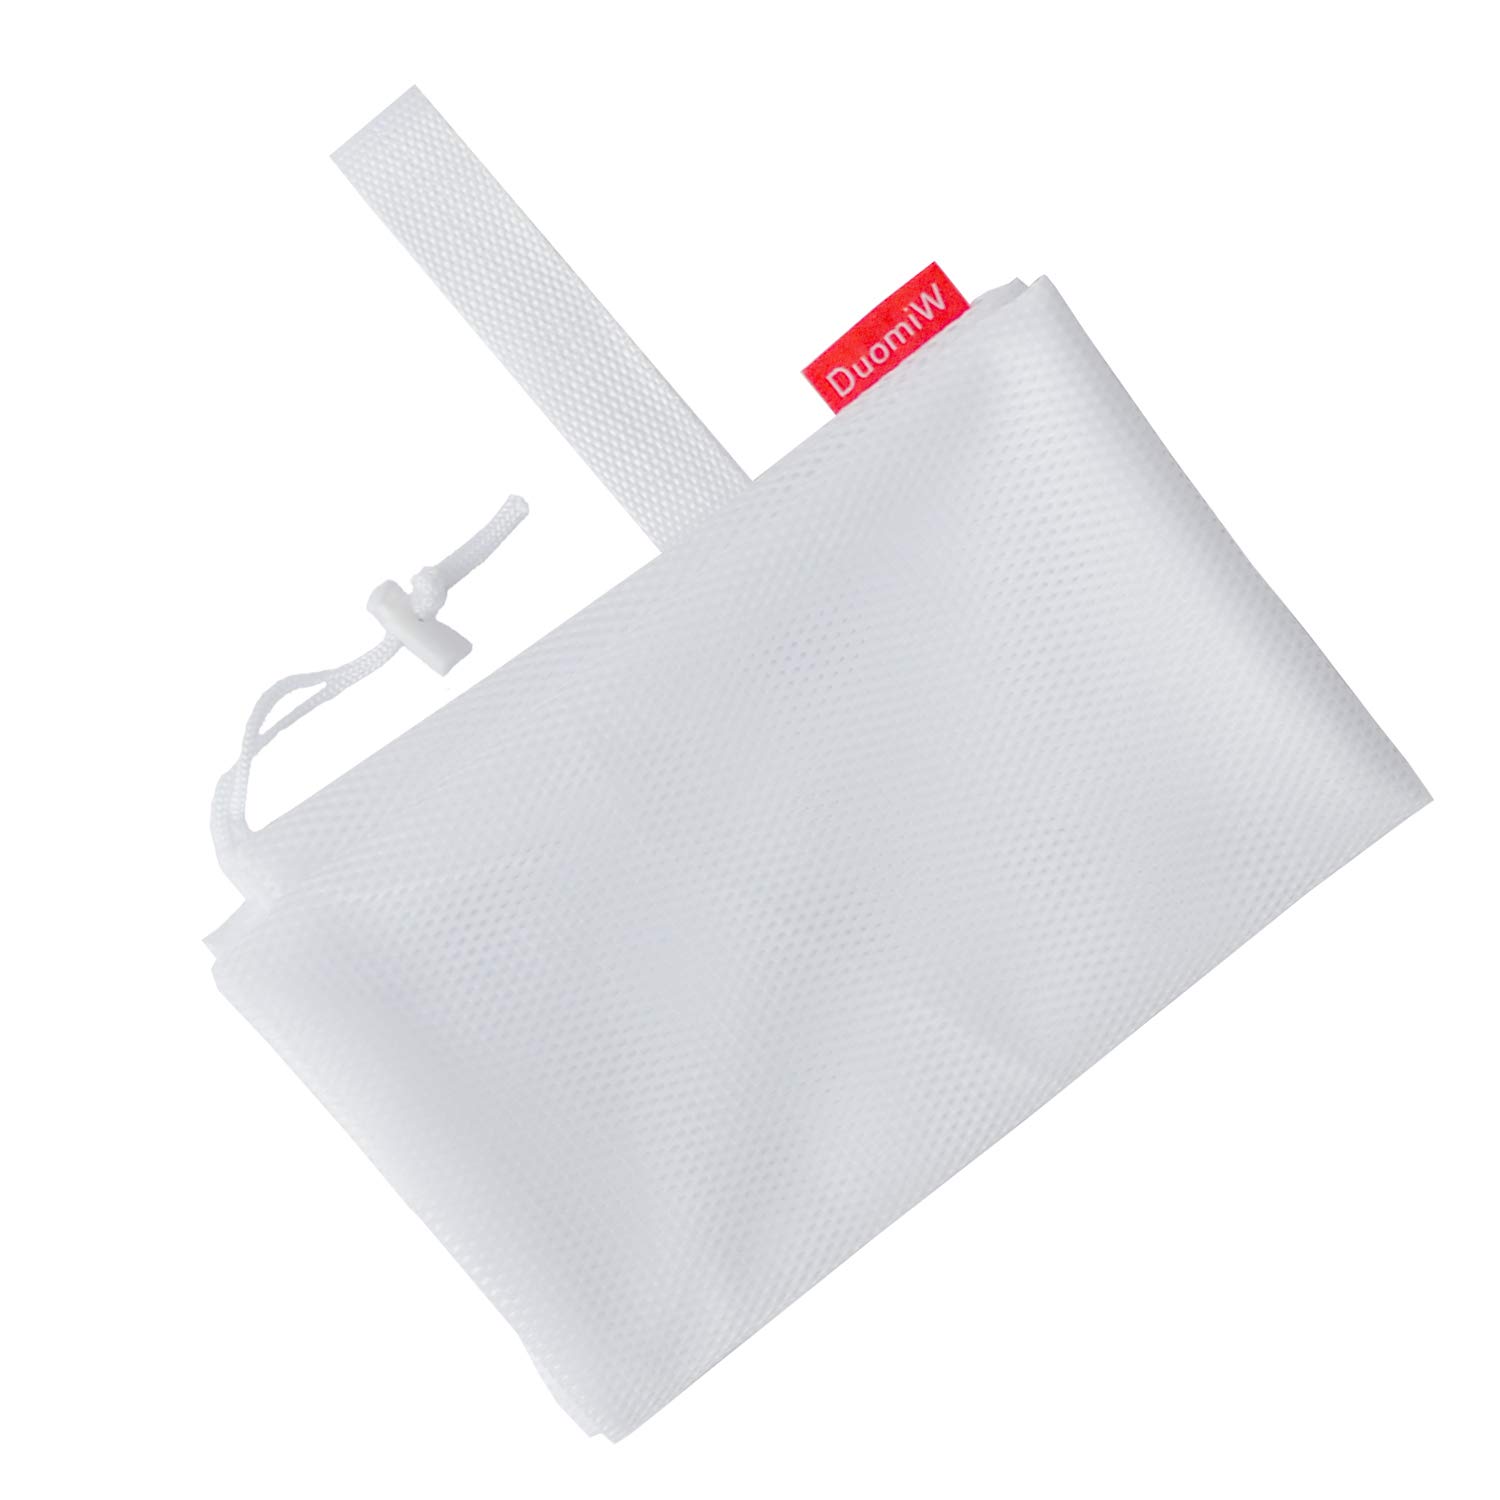 Promotionbag-portable-convenient-easyclean- (5)